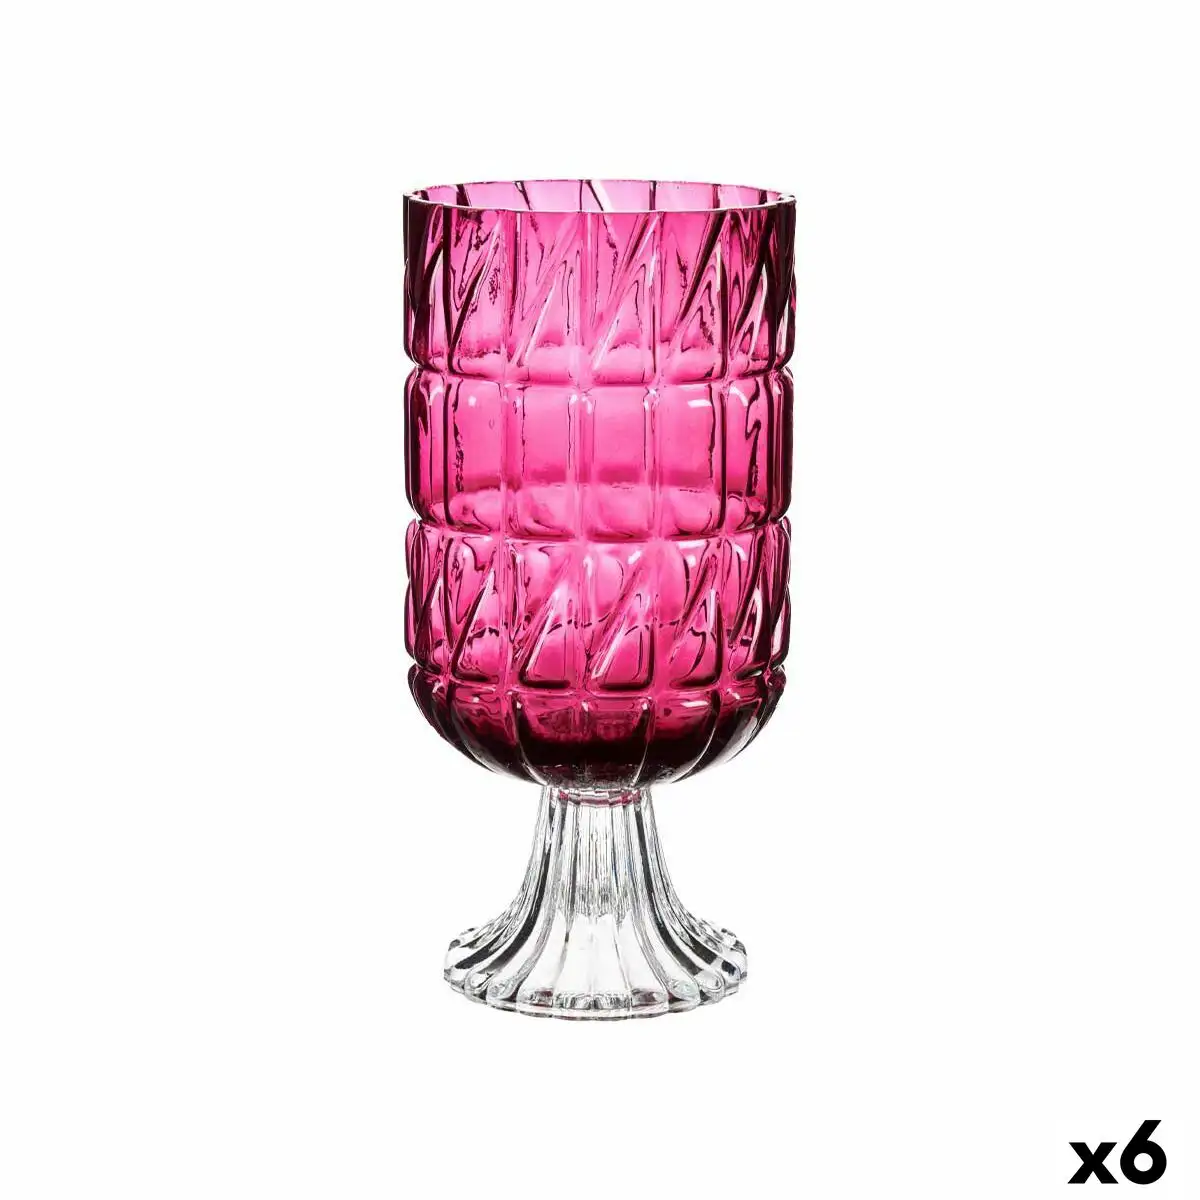 Vase taille rose fonce verre 13 x 26 5 x 13 cm 6 unites _1246. Entrez dans le Monde de DIAYTAR SENEGAL - Où la Satisfaction est la Priorité. Explorez notre sélection pensée pour vous offrir une expérience de shopping qui va au-delà de vos attentes.